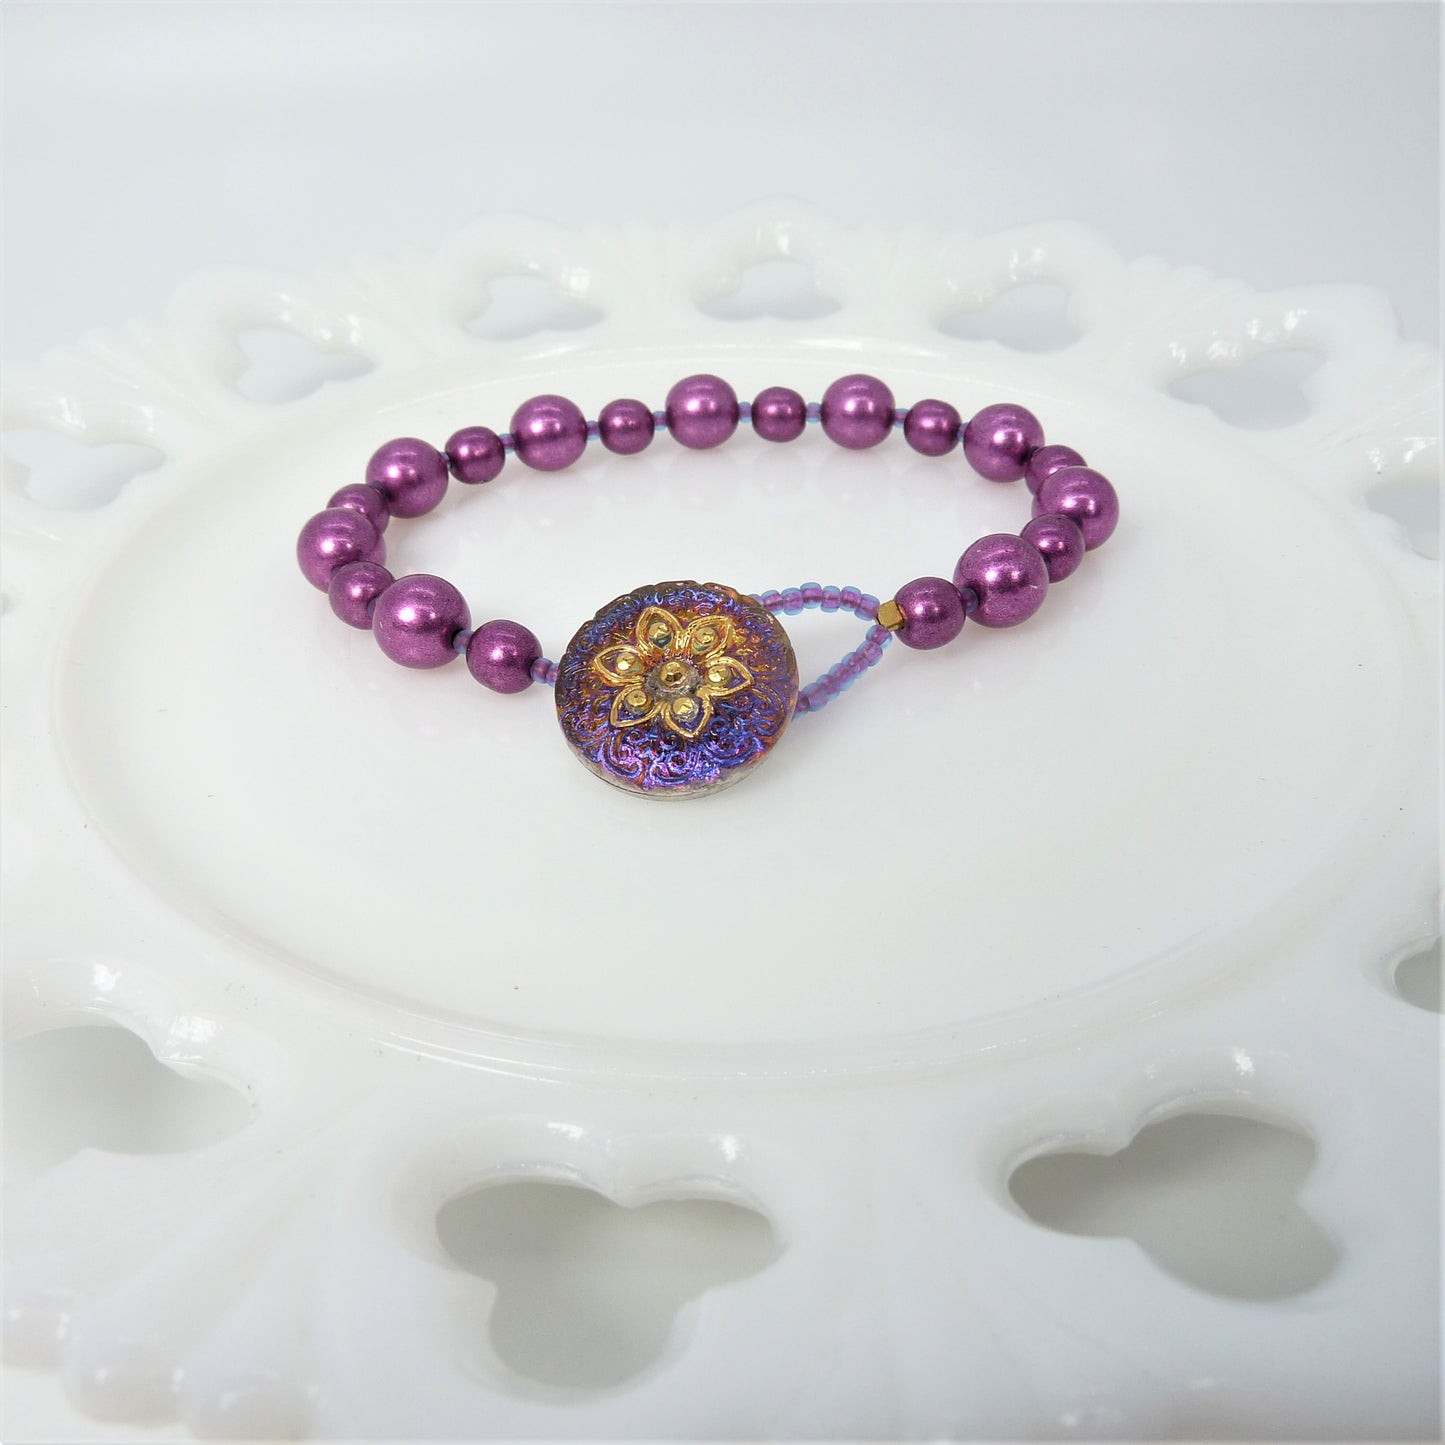 Violet Czech Glass Beads + Czech Glass Flower Button Clasp Bracelet